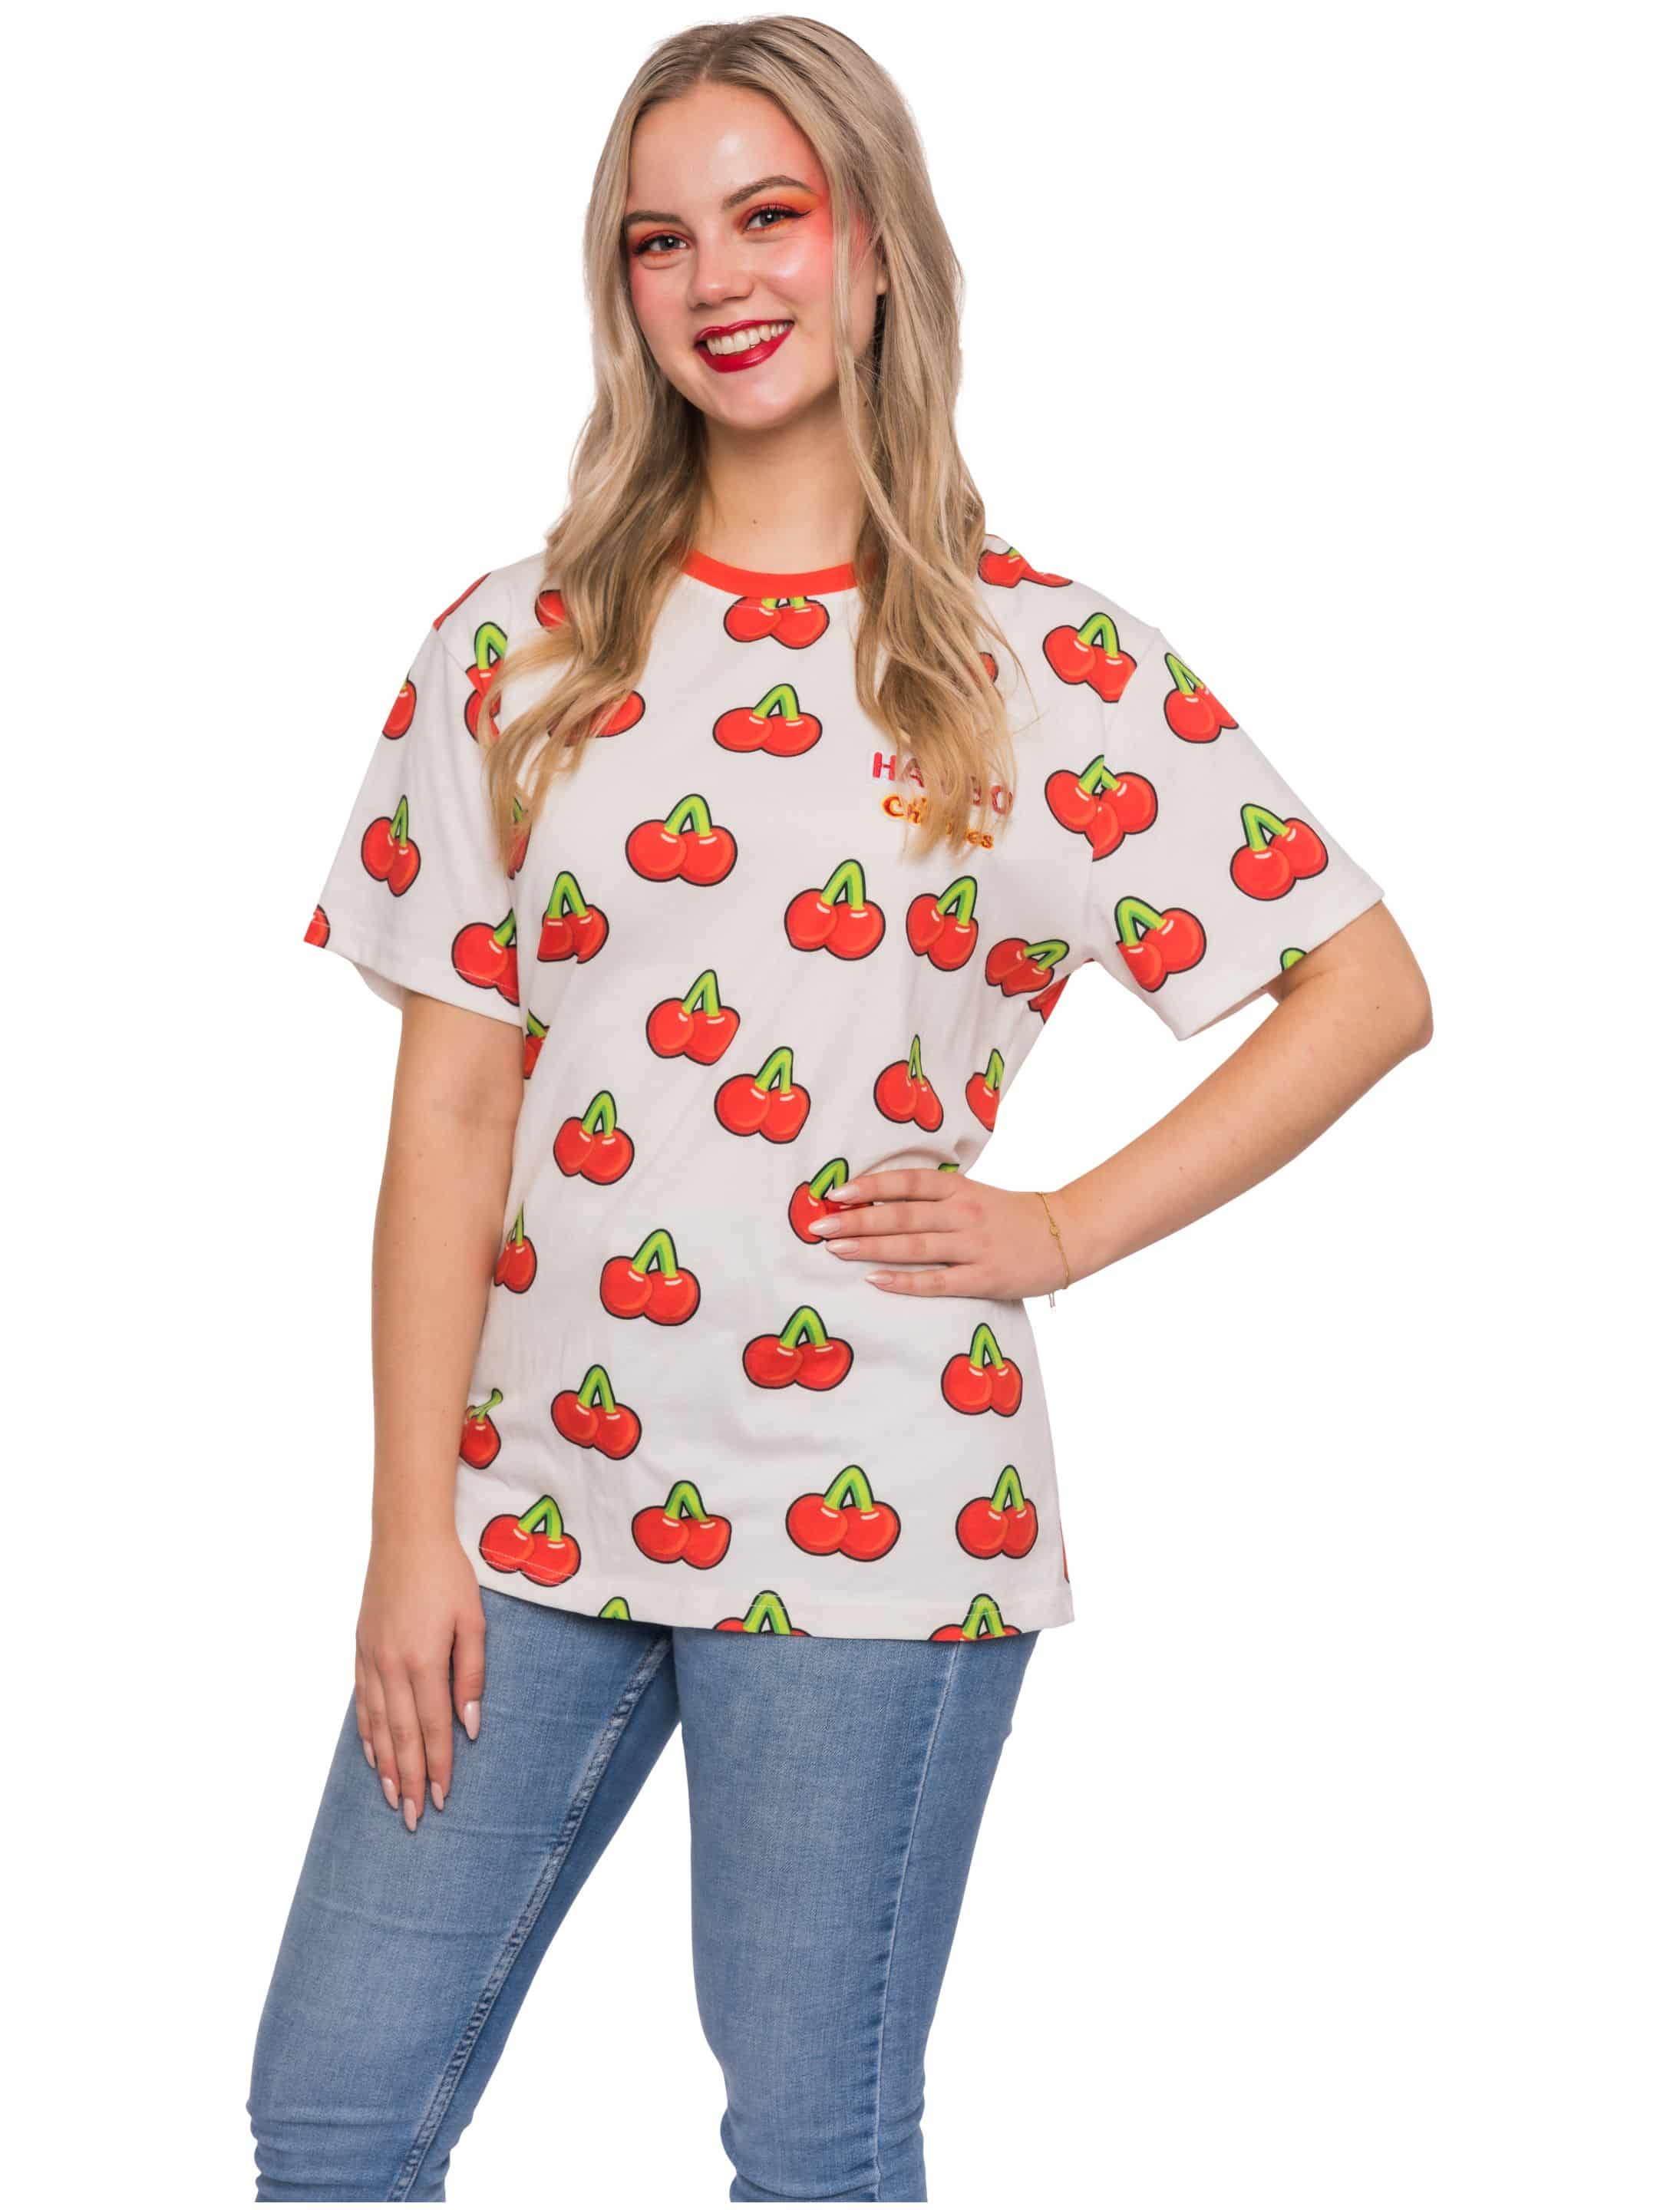 T-Shirt HARIBO Happy Cherries Unisex weiß/rot M